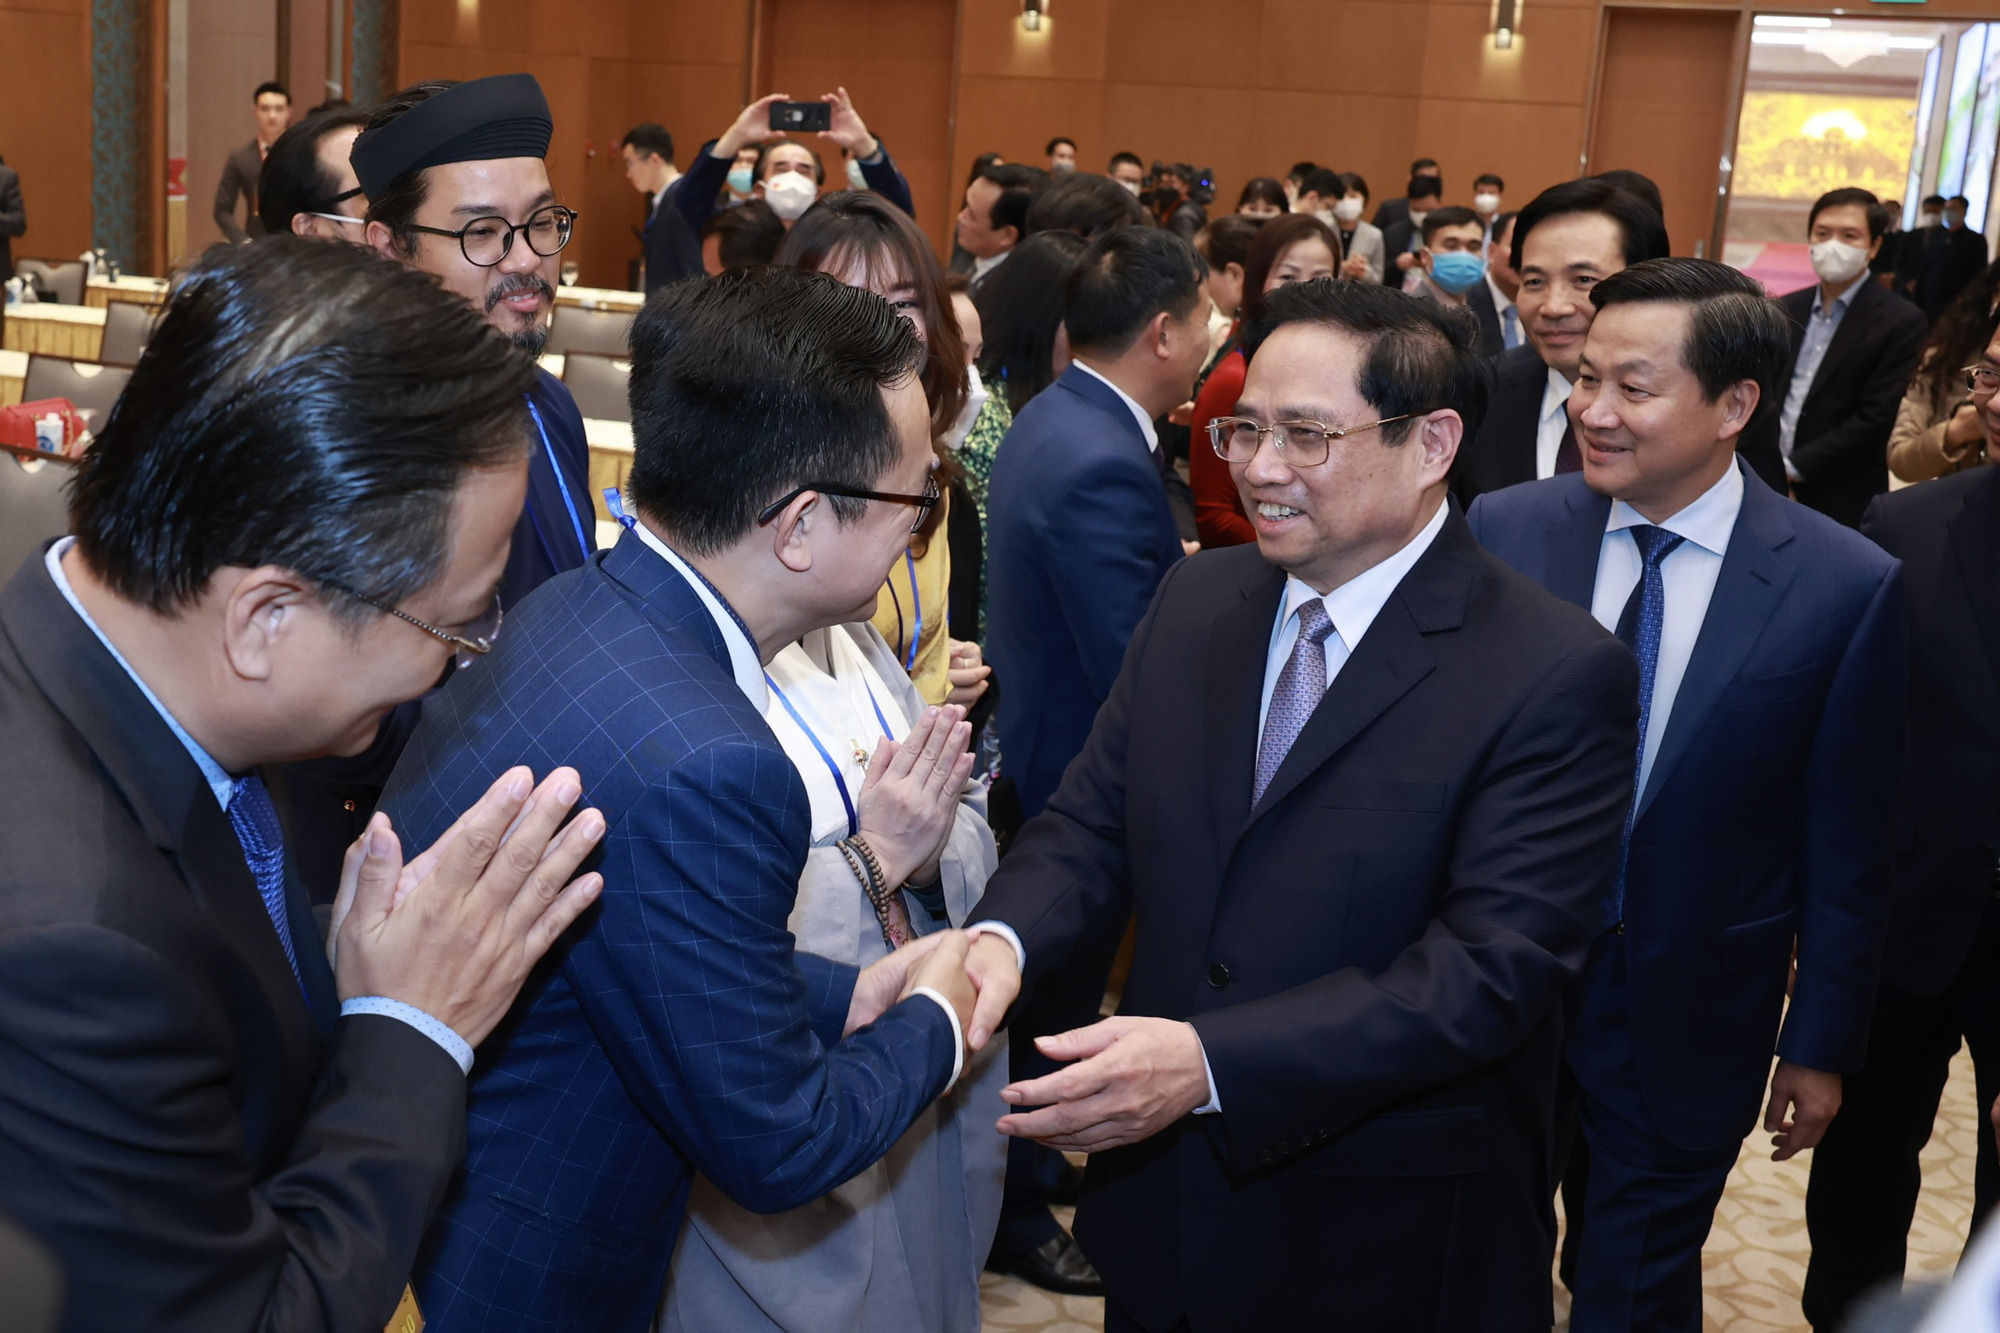 Thủ tướng Phạm Minh Chính: Chính phủ sẽ có giải pháp để "đường về quê gần hơn" với kiều bào